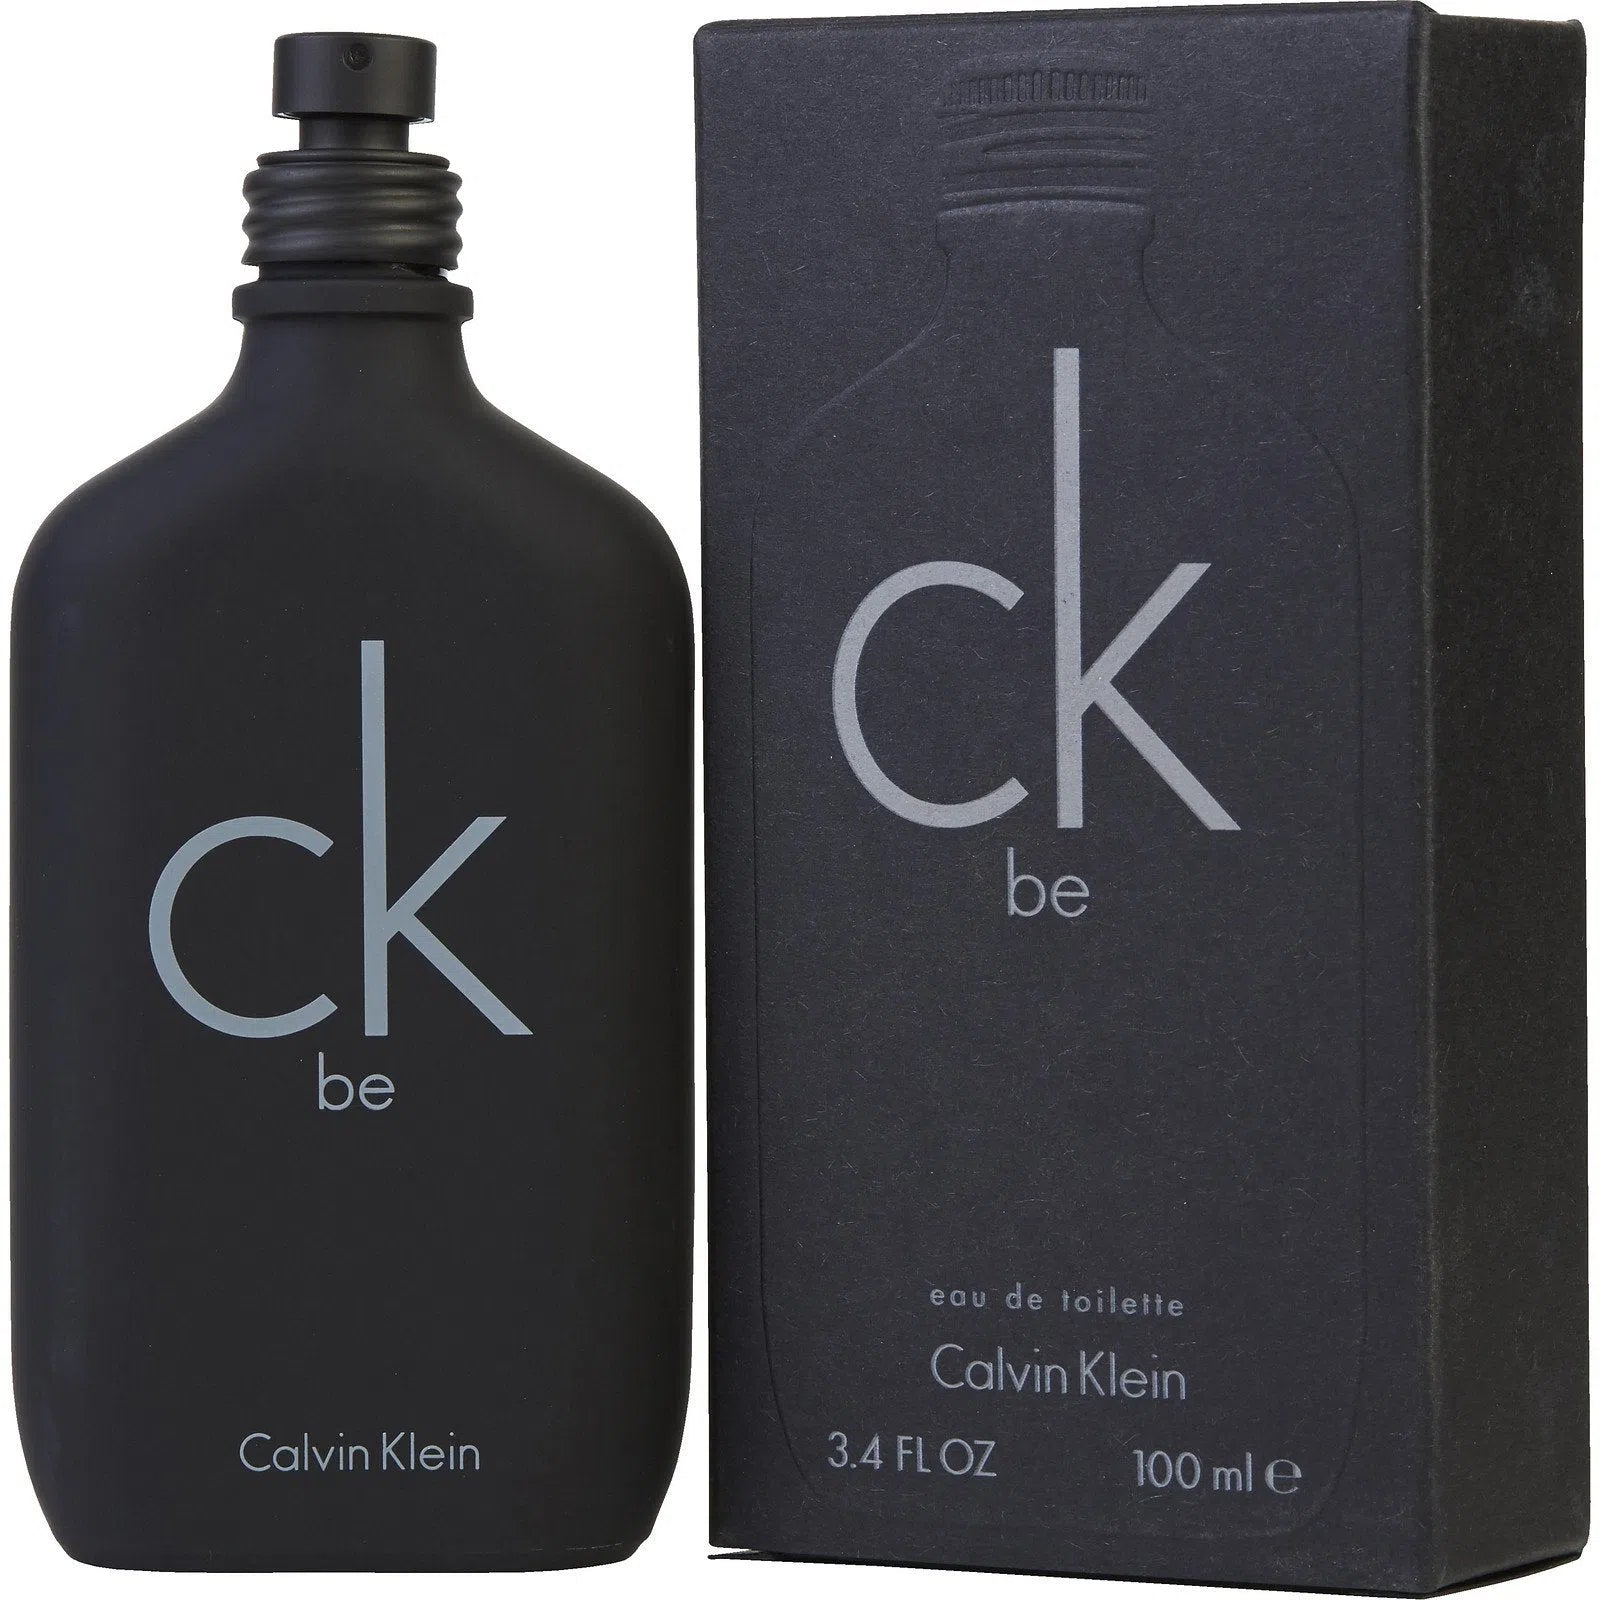 Perfume Calvin Klein CK Be EDT (M) / 100 ml - 088300104406- Prive Perfumes Honduras